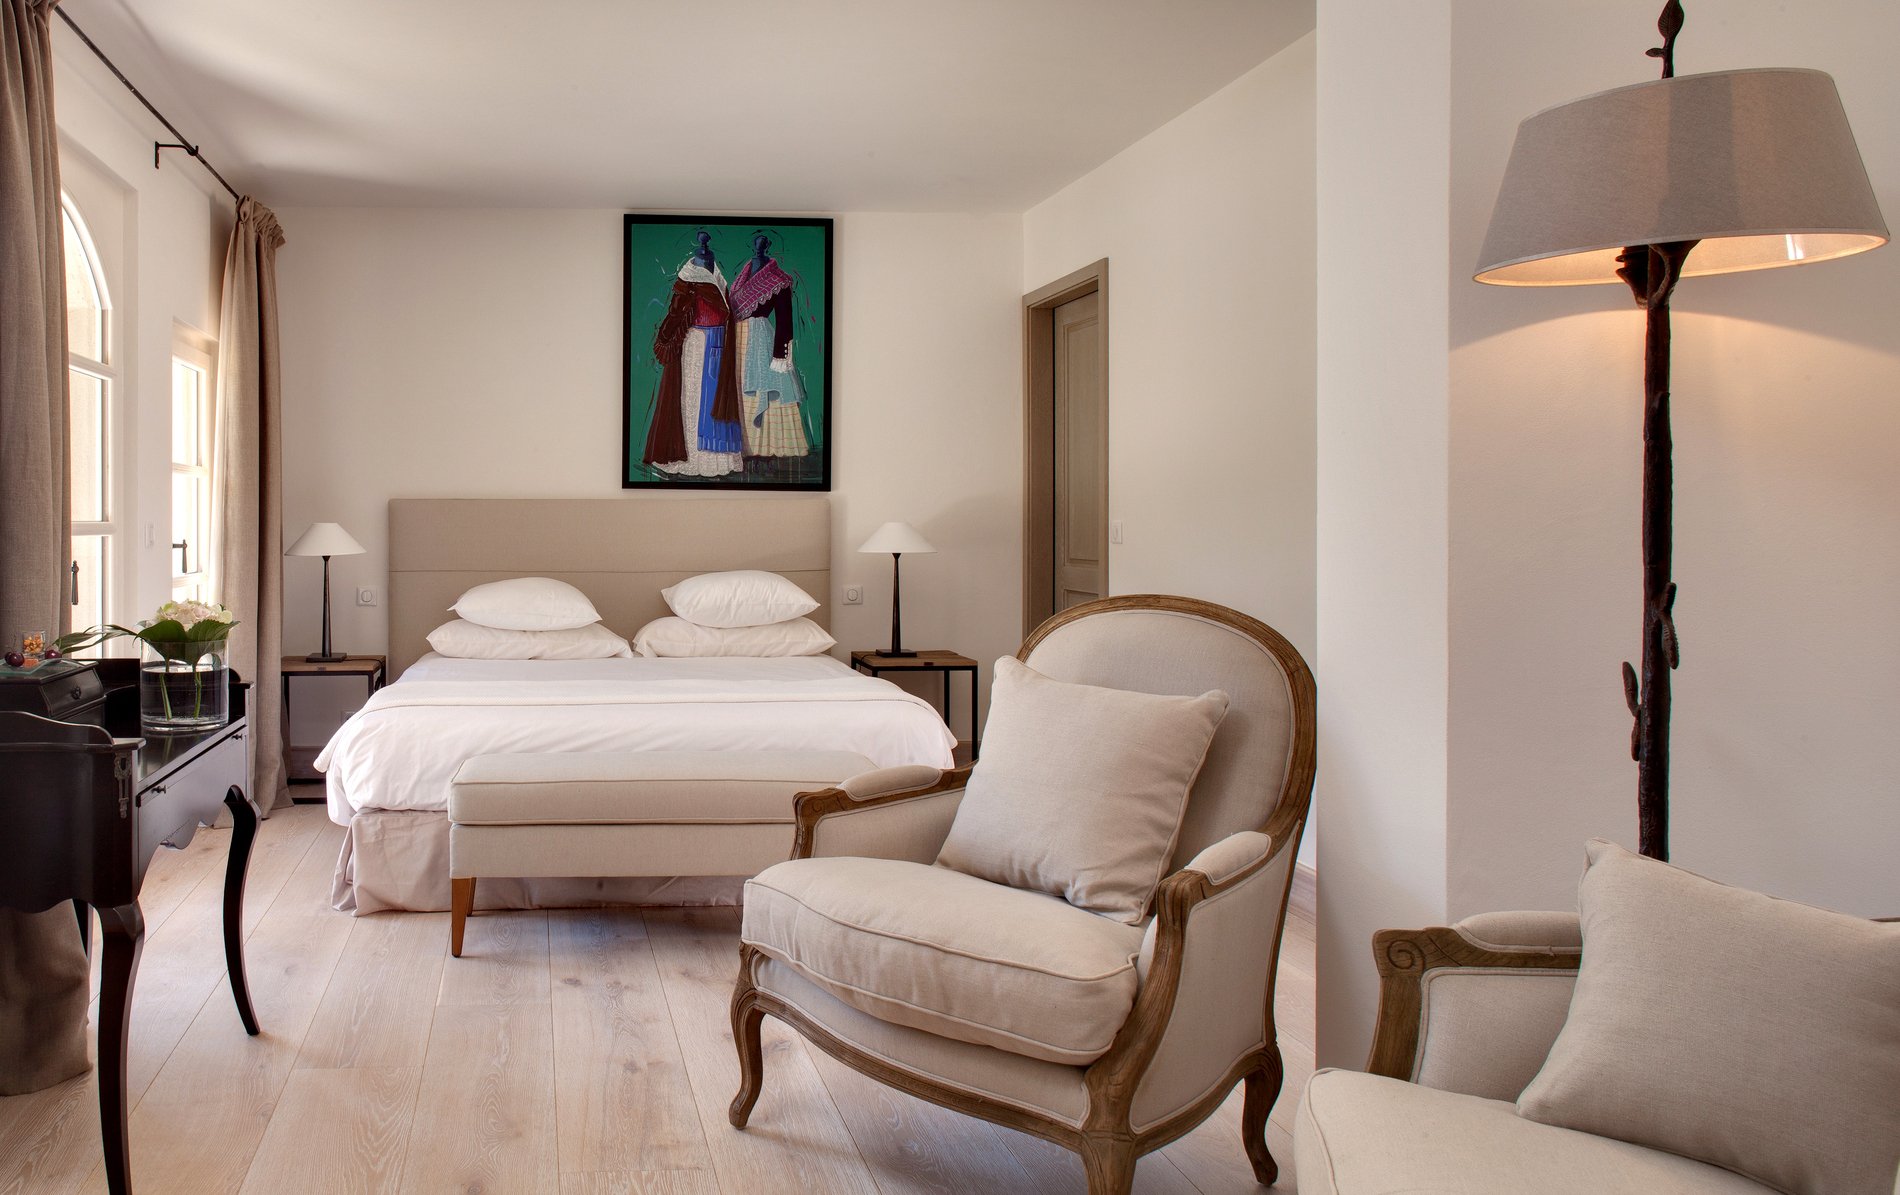 Luxury boutique hotel Benvengudo 4 stars Les Baux-de-Provence France room